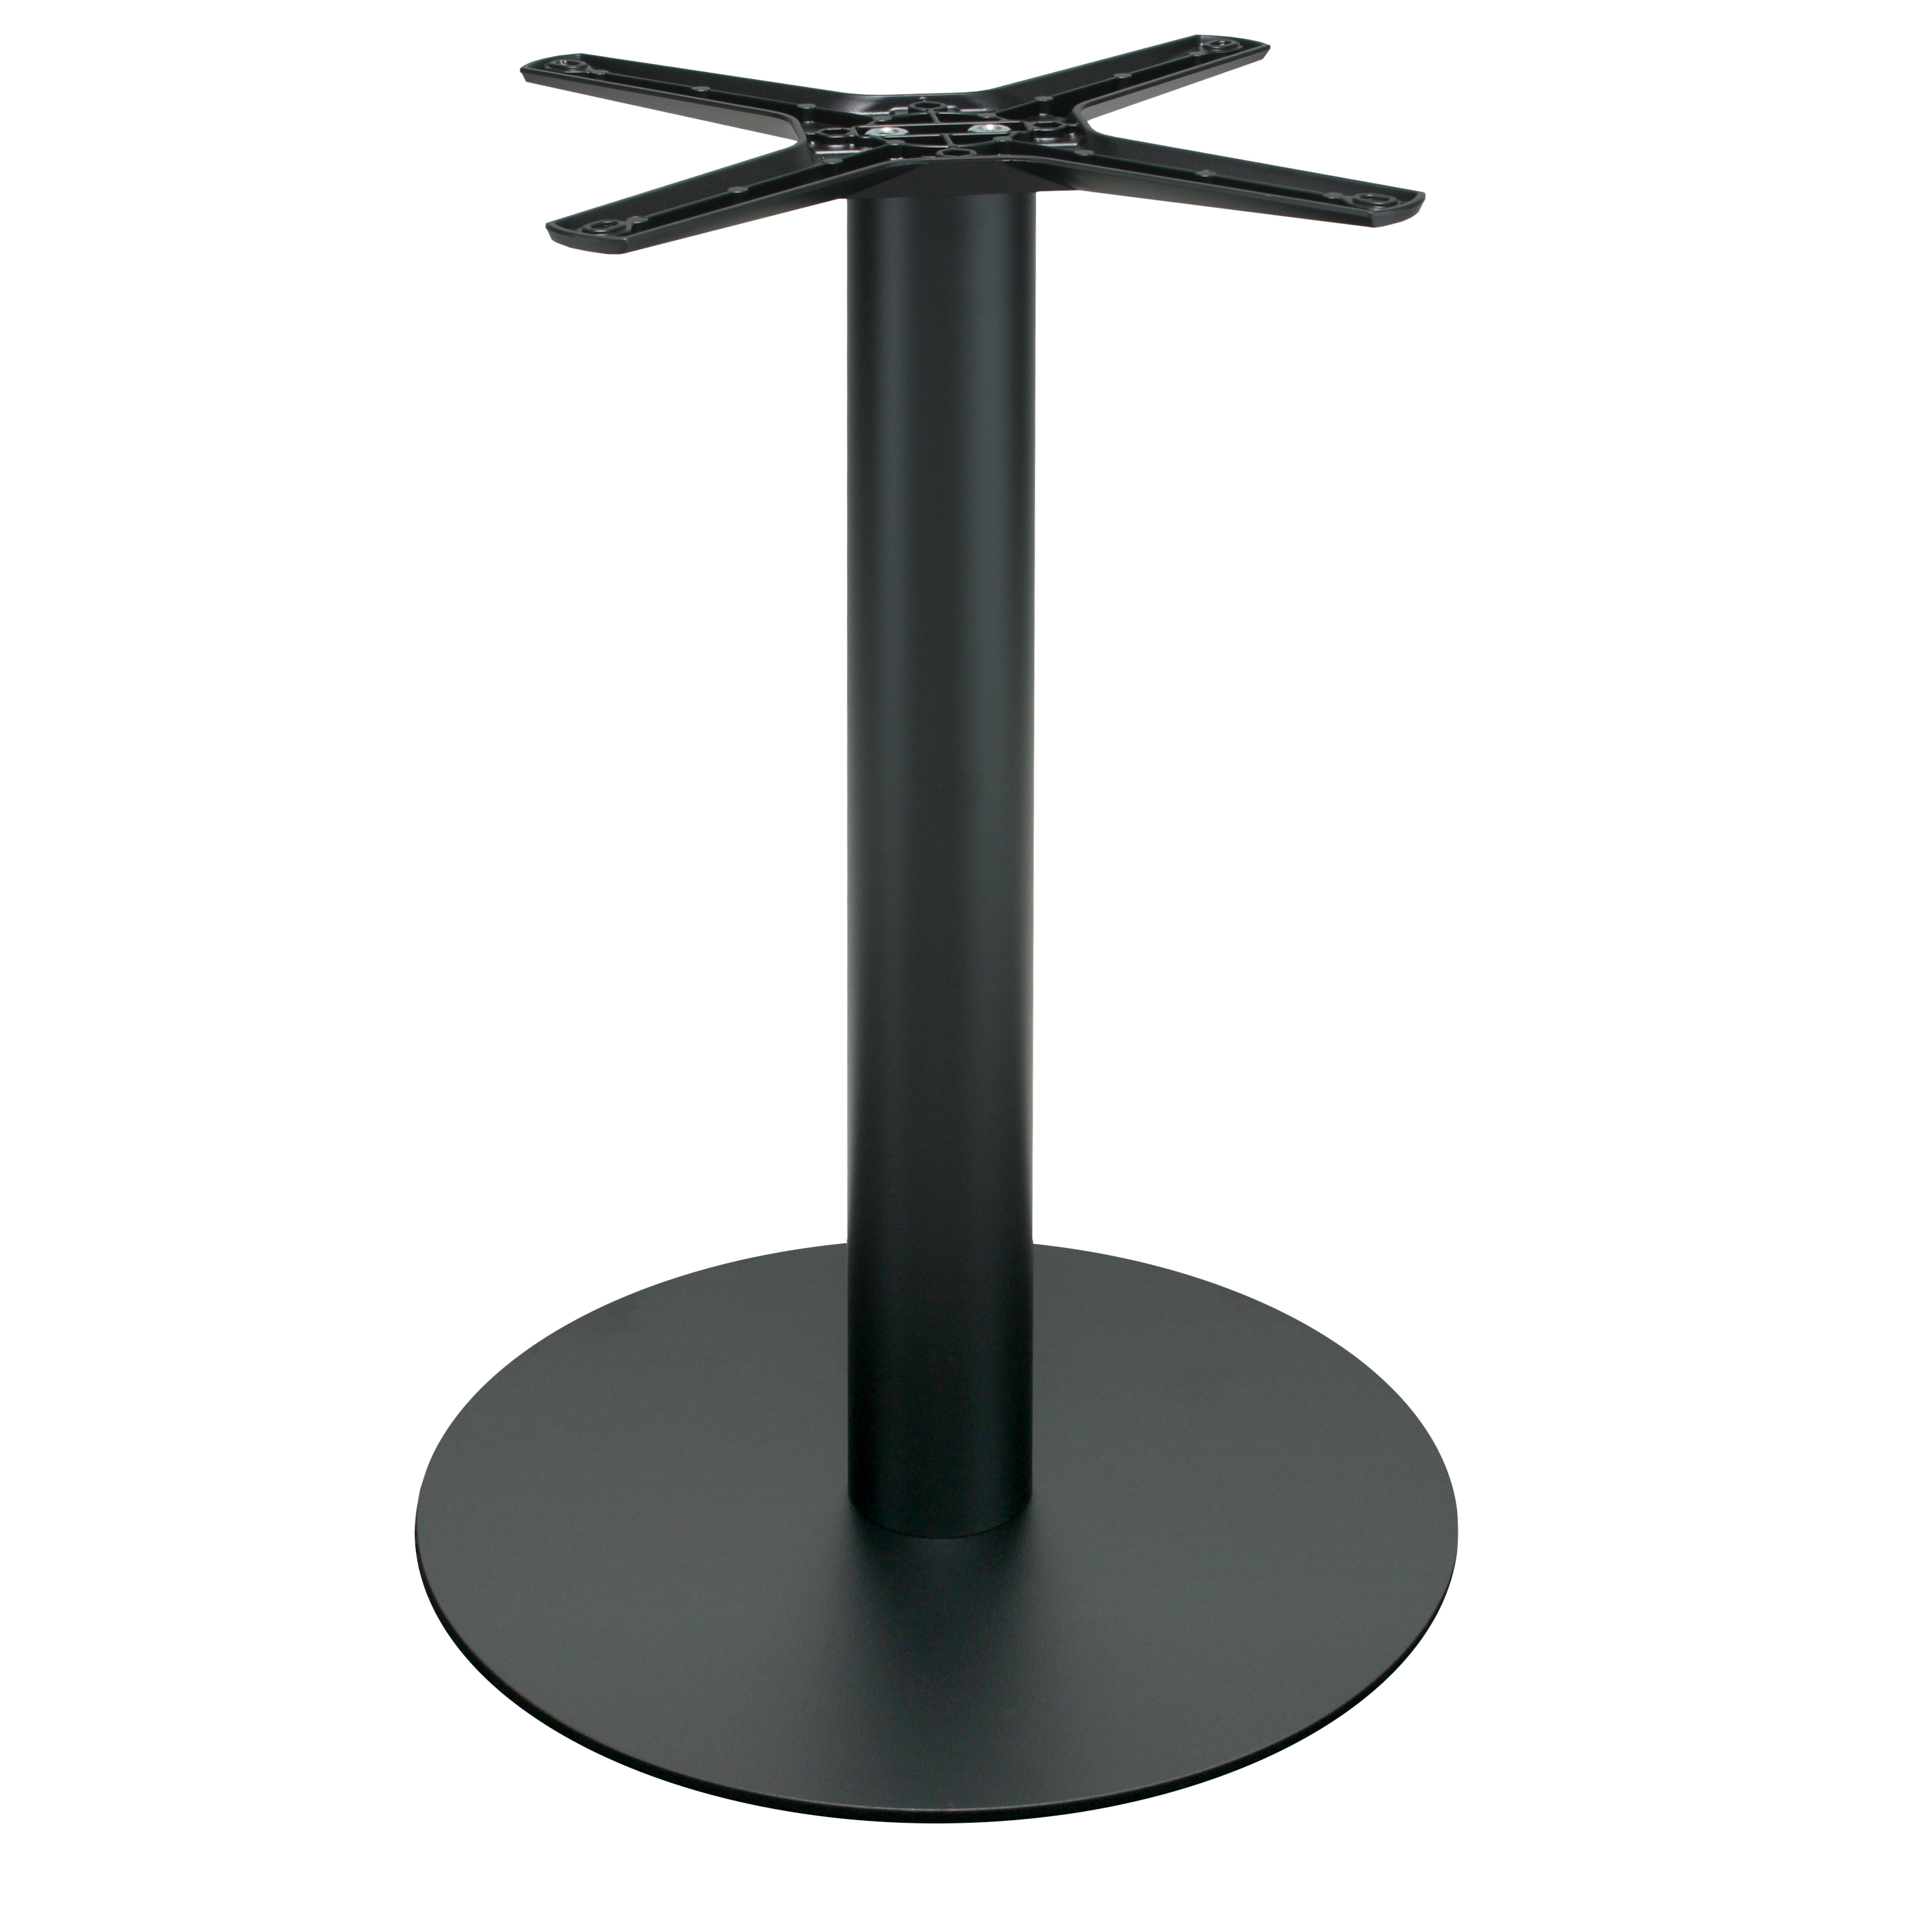 Tischgestell P010F aus Metall, pulverbeschichtet schwarz, rund